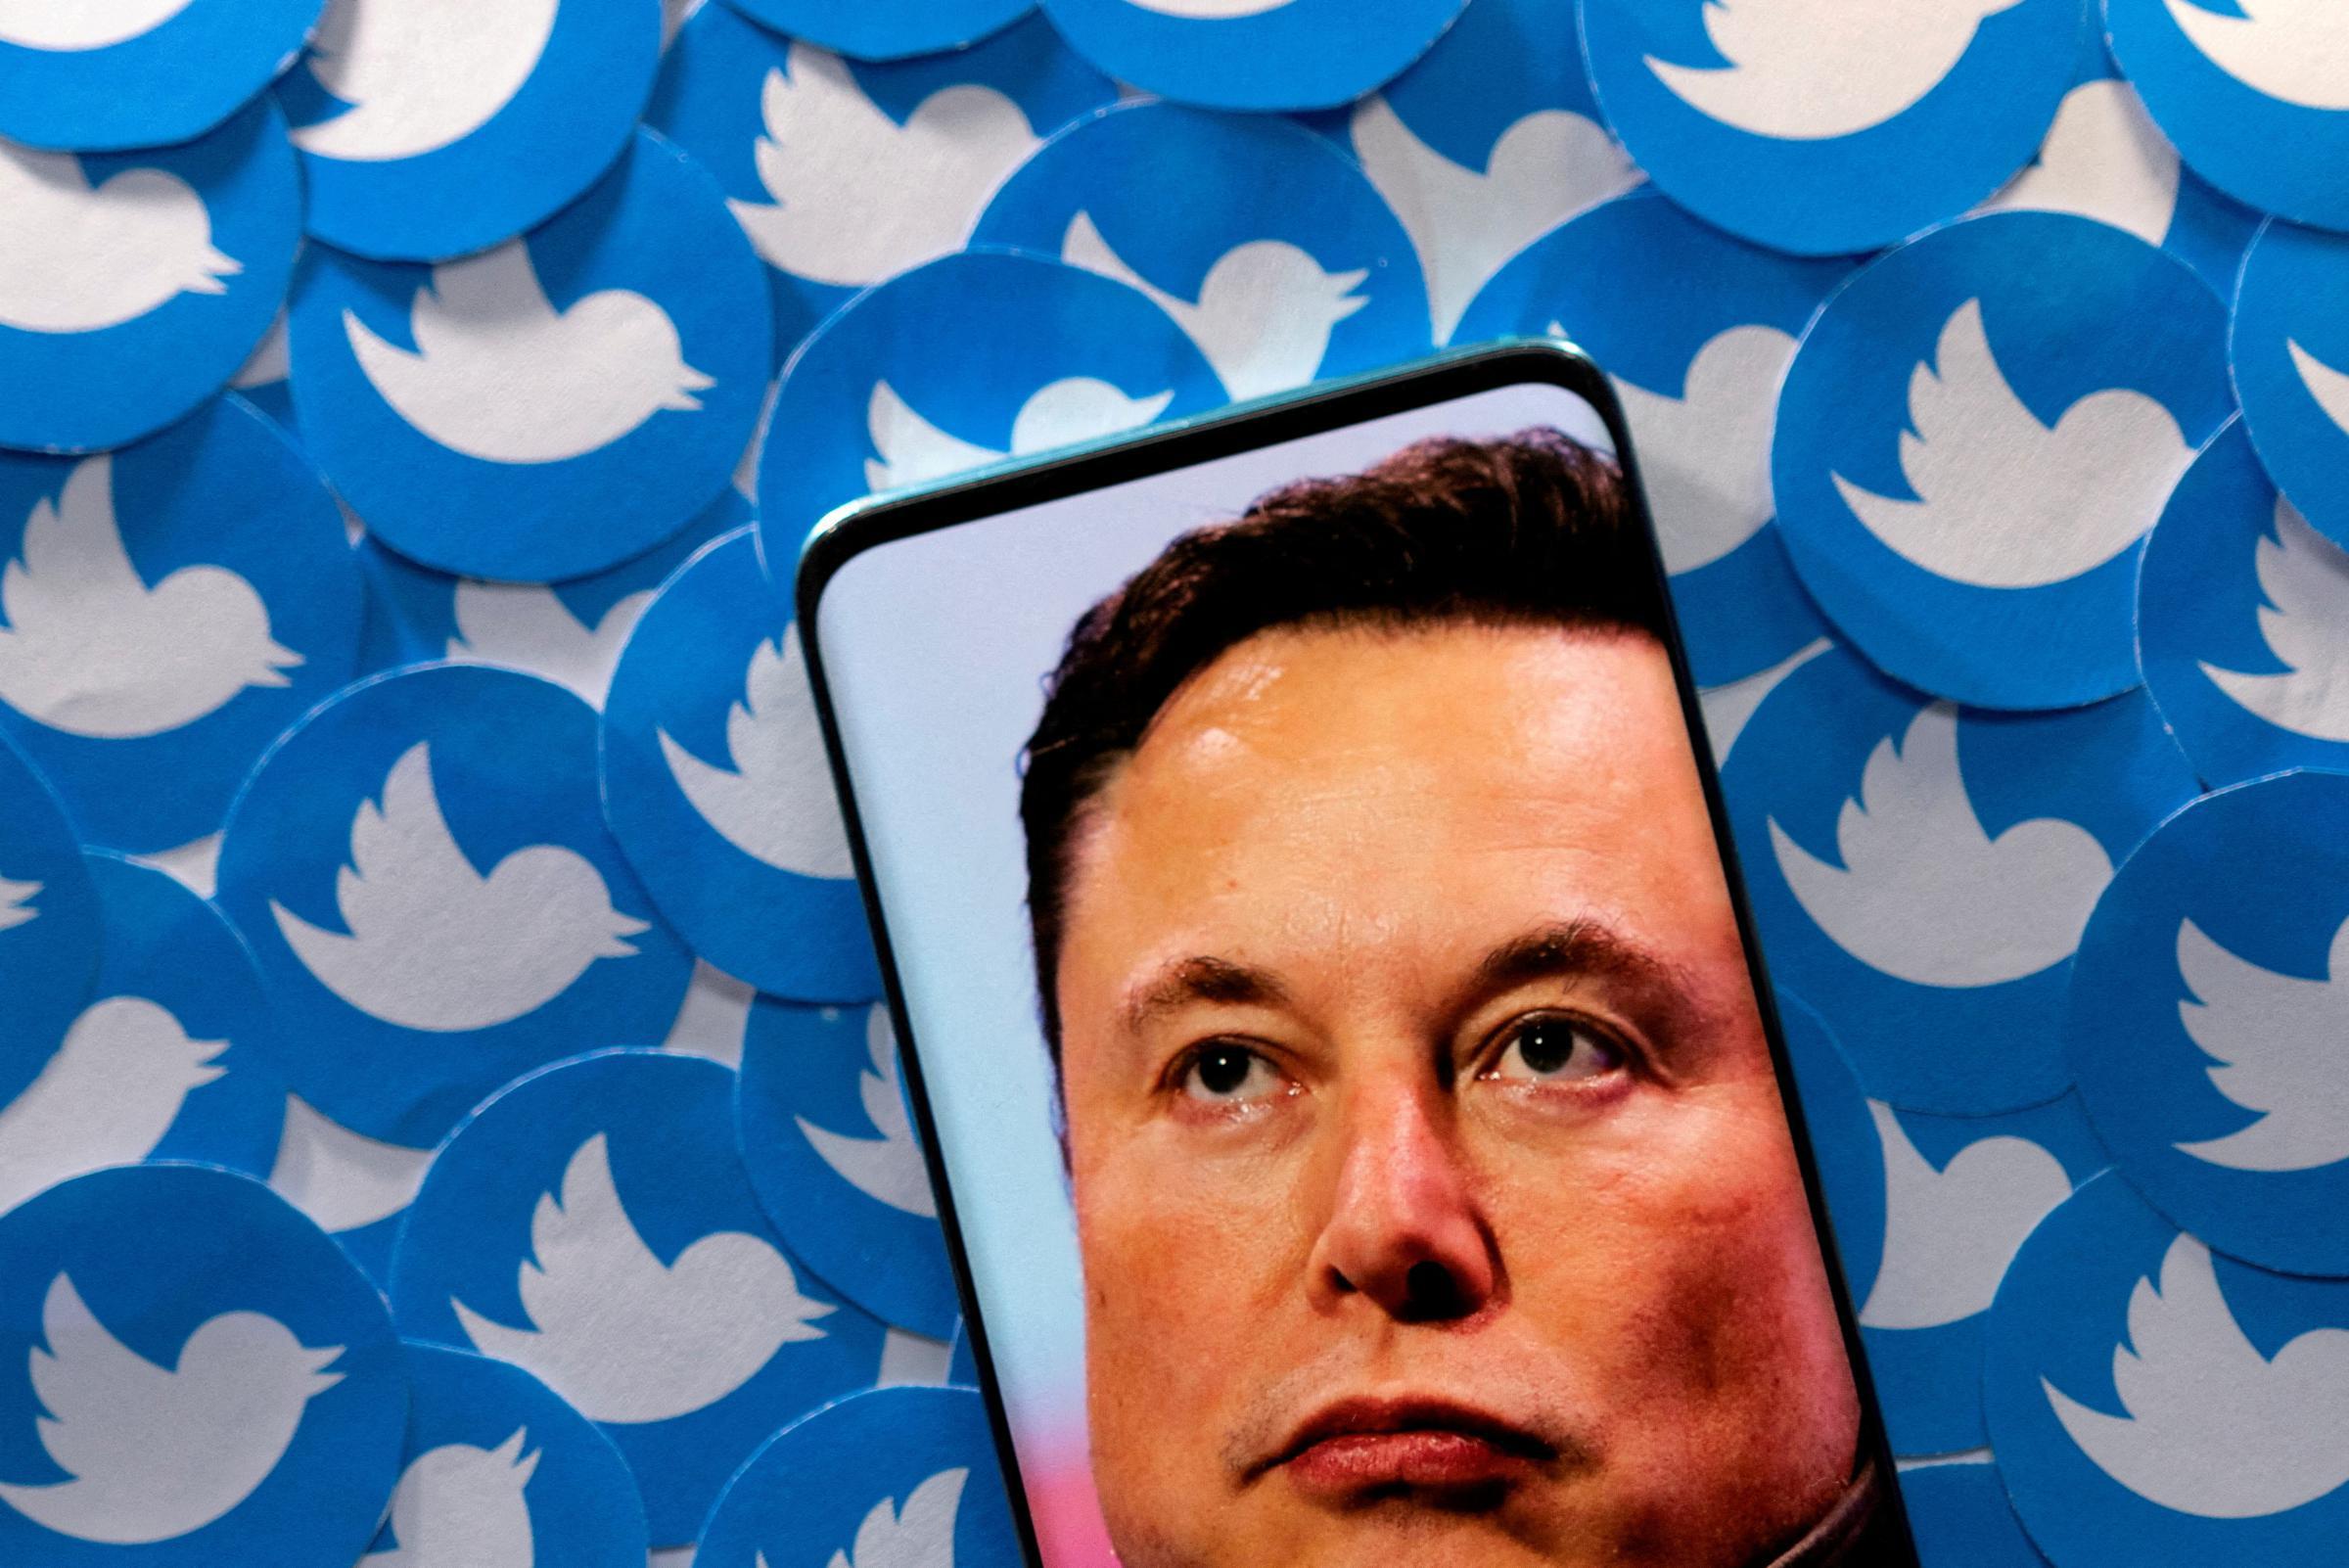 Elon Musk vieta alle persone di impersonare lui su Twitter